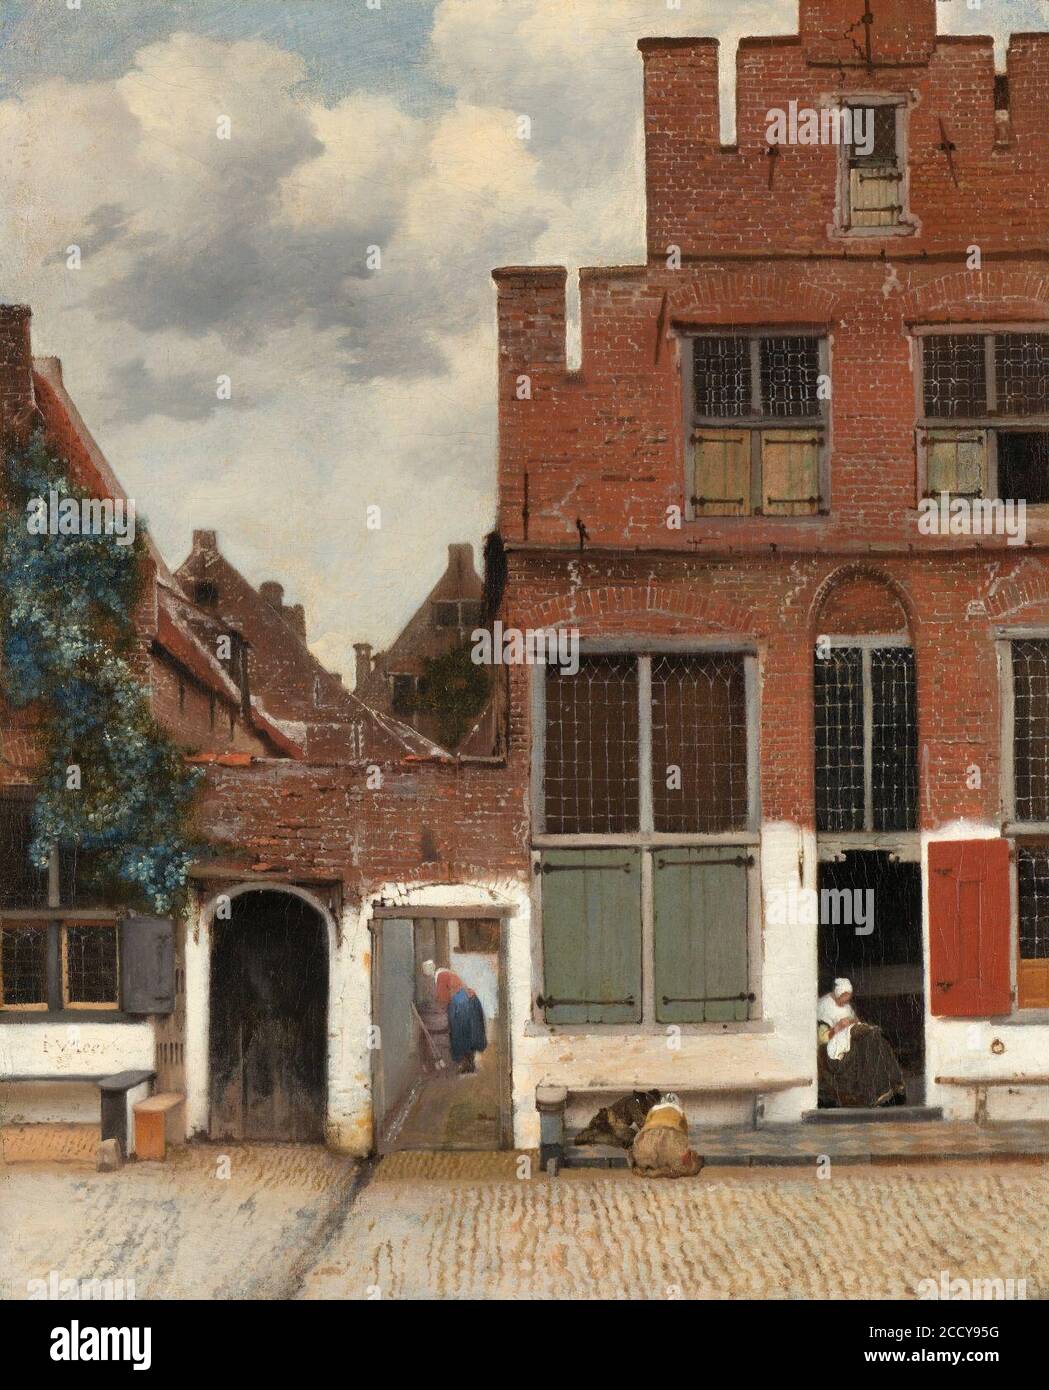 Johannes Vermeer - Gezicht op huizen in Delft, bekend als "Het straatje' Foto Stock